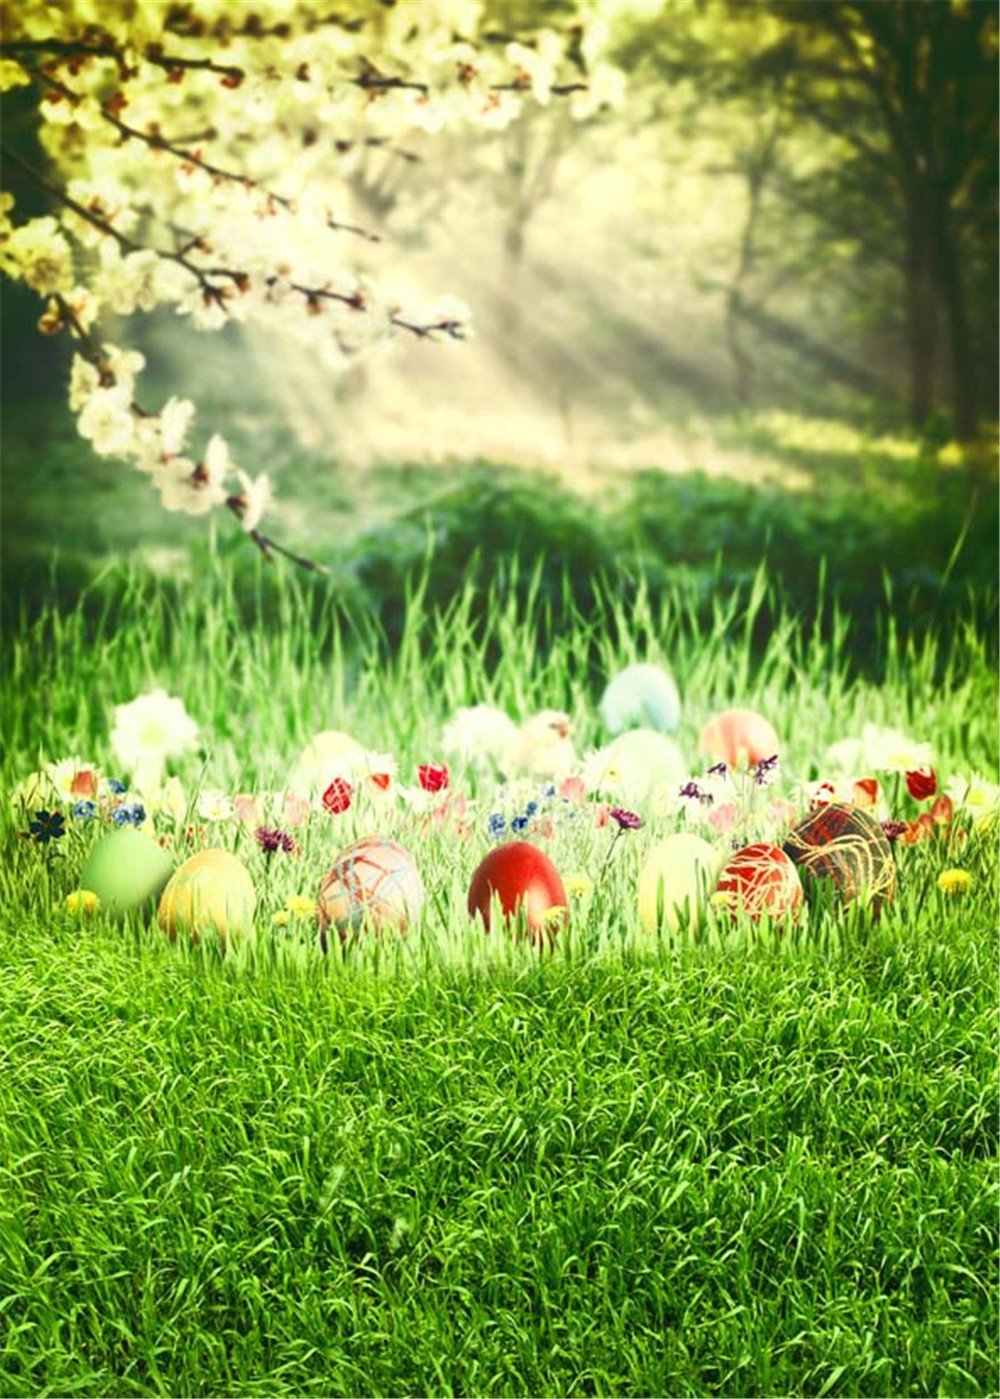 Soleil à travers la forêt Bokeh photographie décors printemps imprimé poire fleurs herbe verte oeufs de pâques bébé nouveau-né Photo Shoot fond